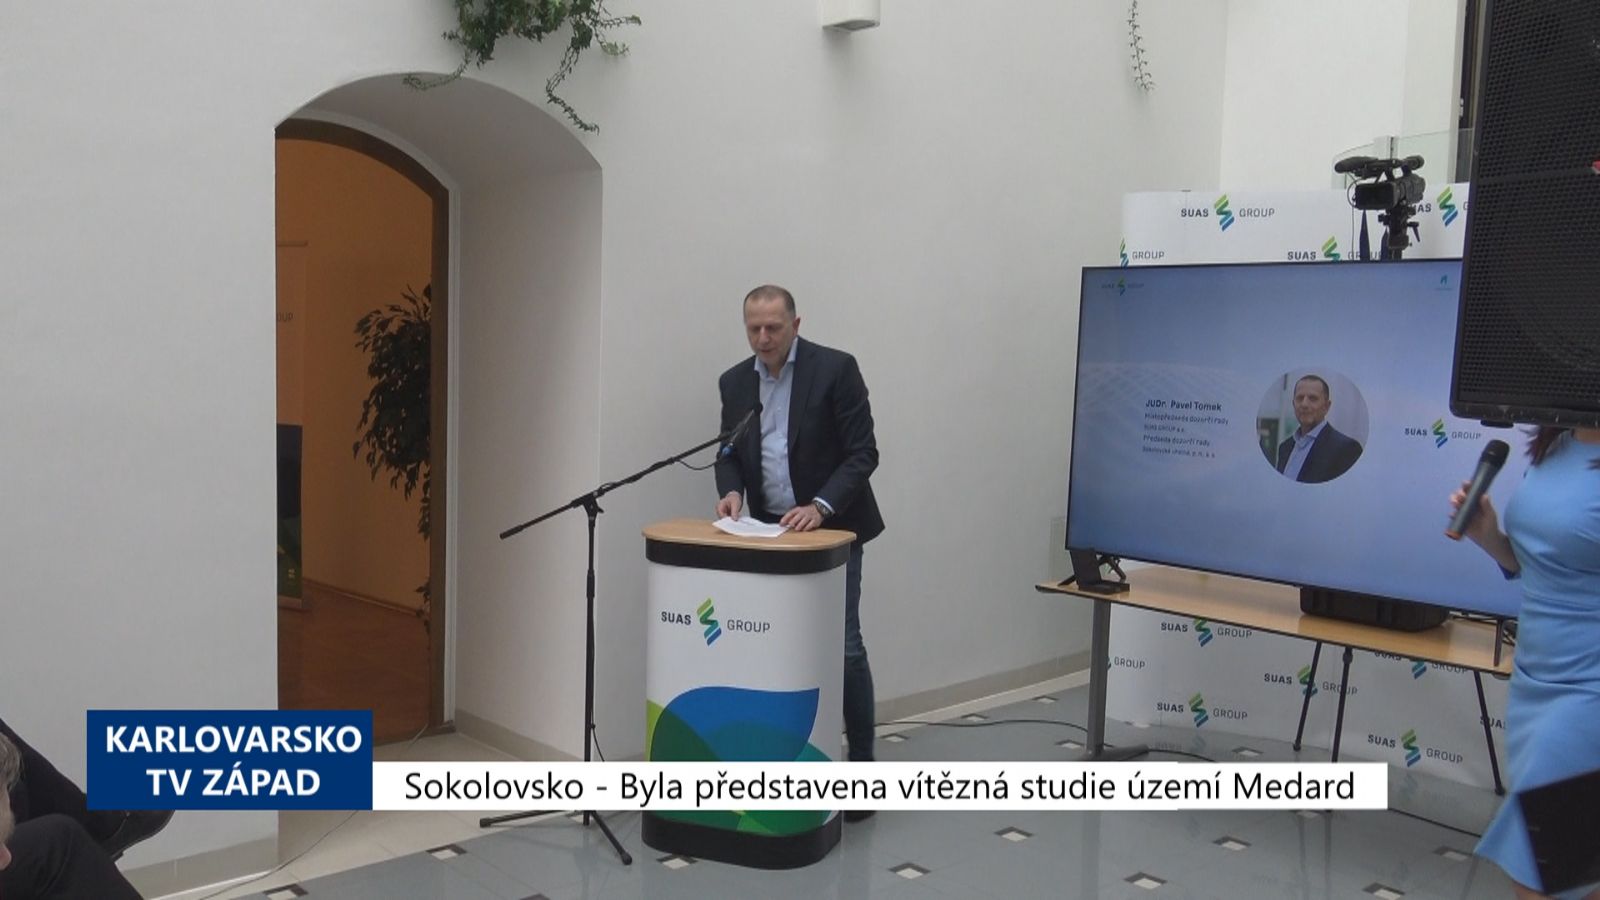 Sokolovsko: Byla představena vítězná studie území Medard (TV Západ)